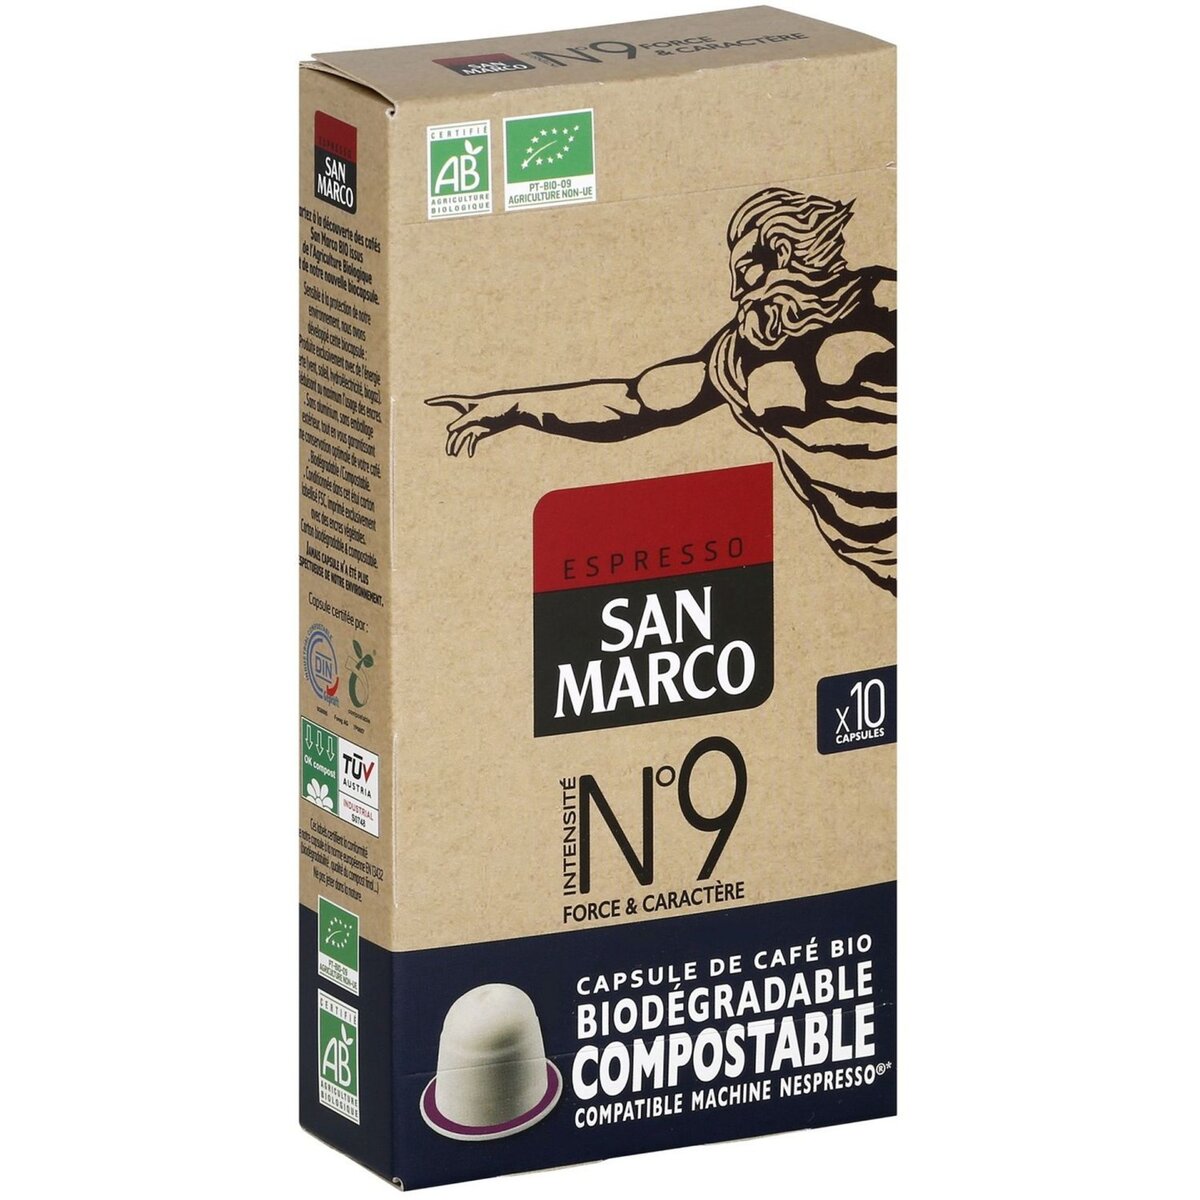 SAN MARCO Café bio n°9 en capsule biodégradable compatible Nespresso 10 capsules 51g